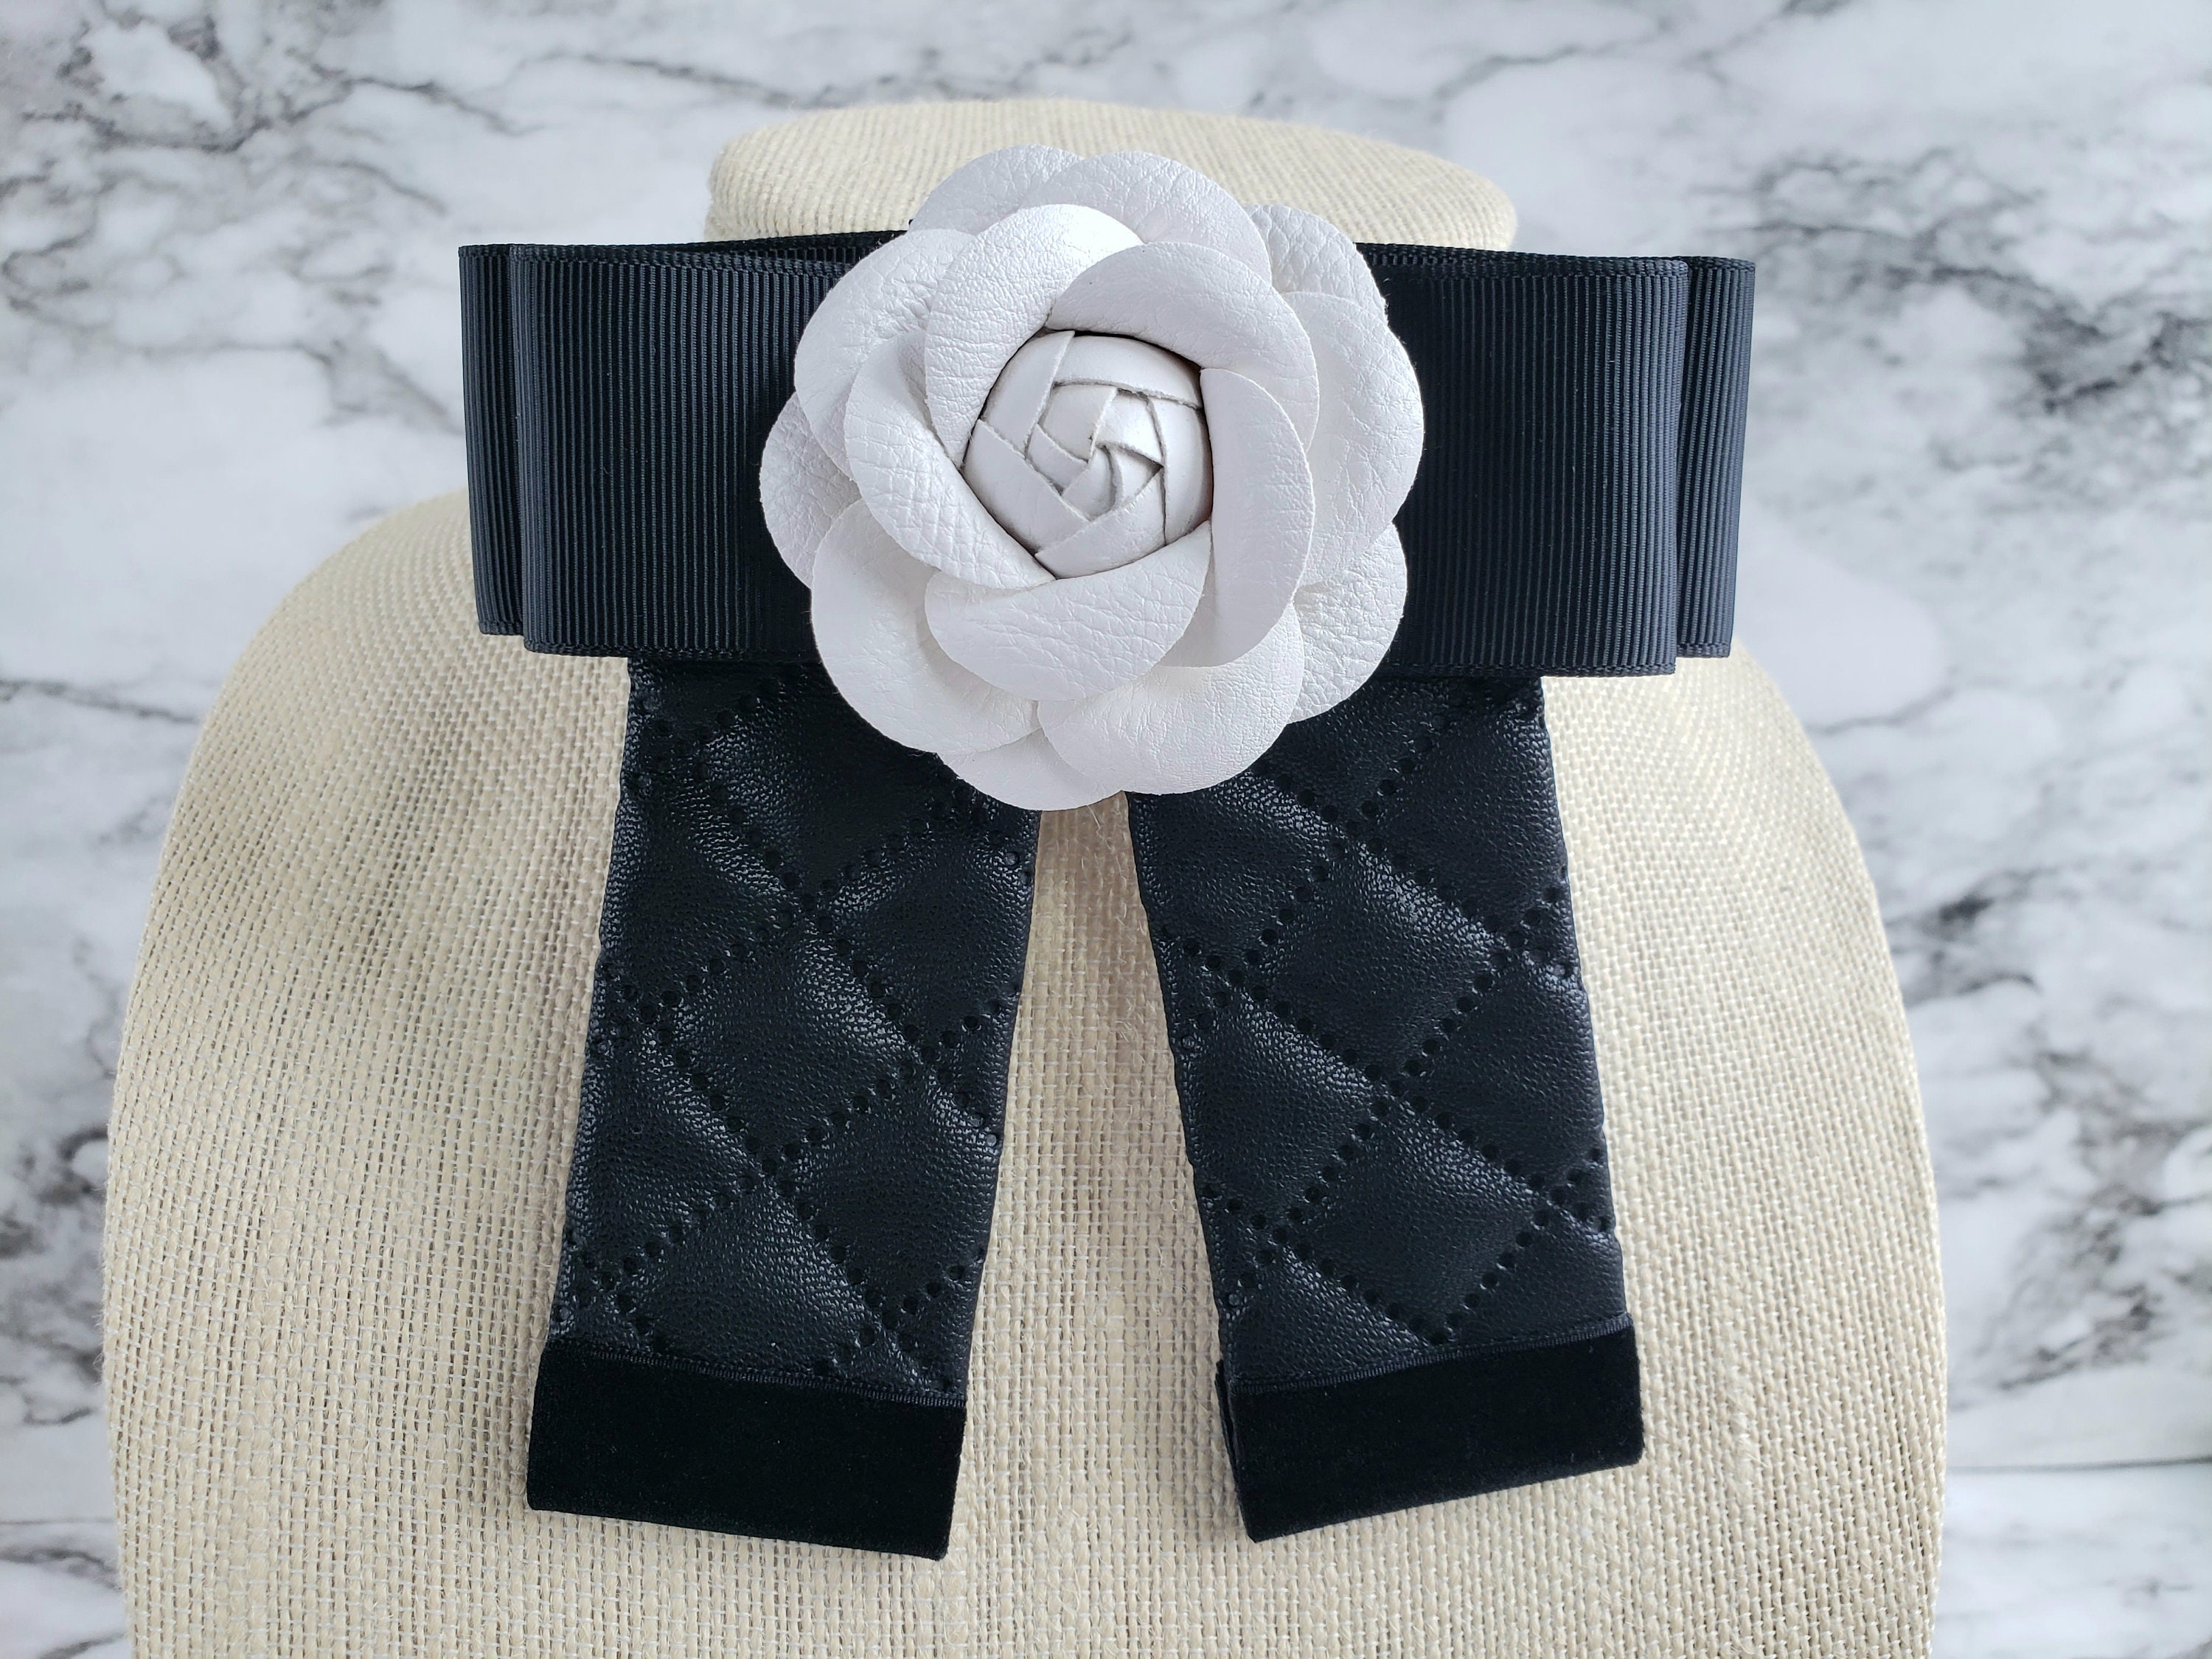 Chanel - Flower lavallière bow tie